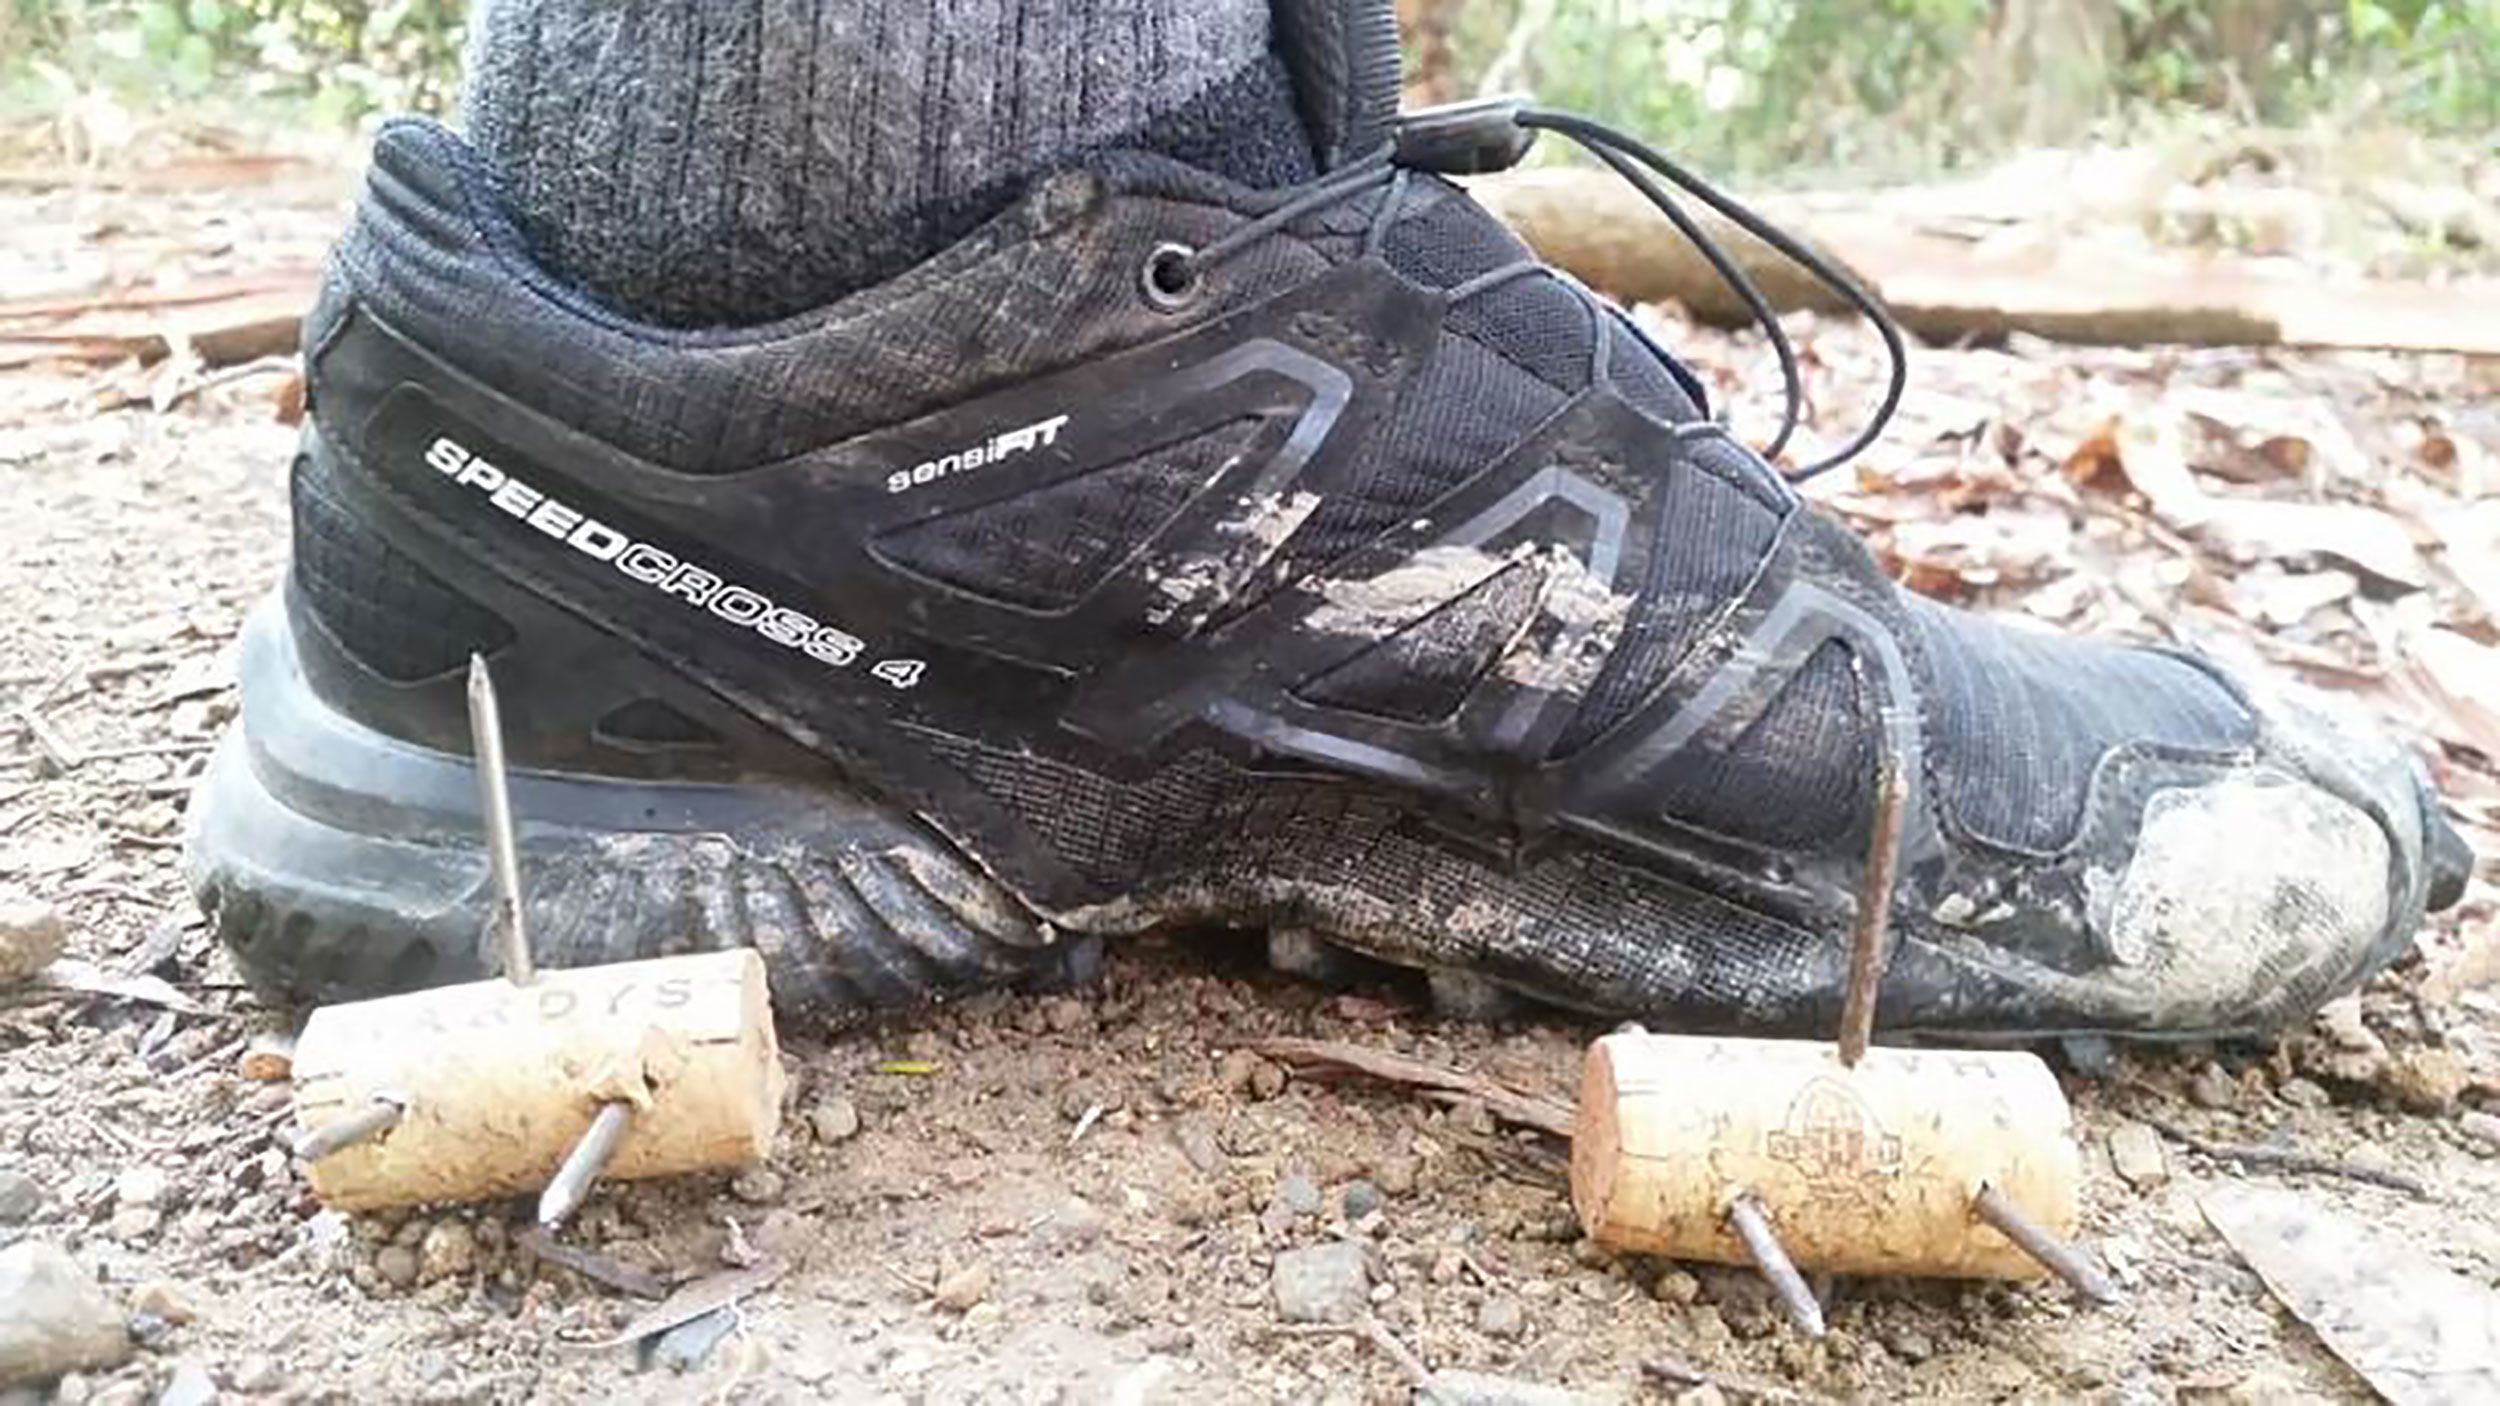 lov lag lokalisere An Australian runner found dangerous spikes hidden on a popular nature  trail | CNN